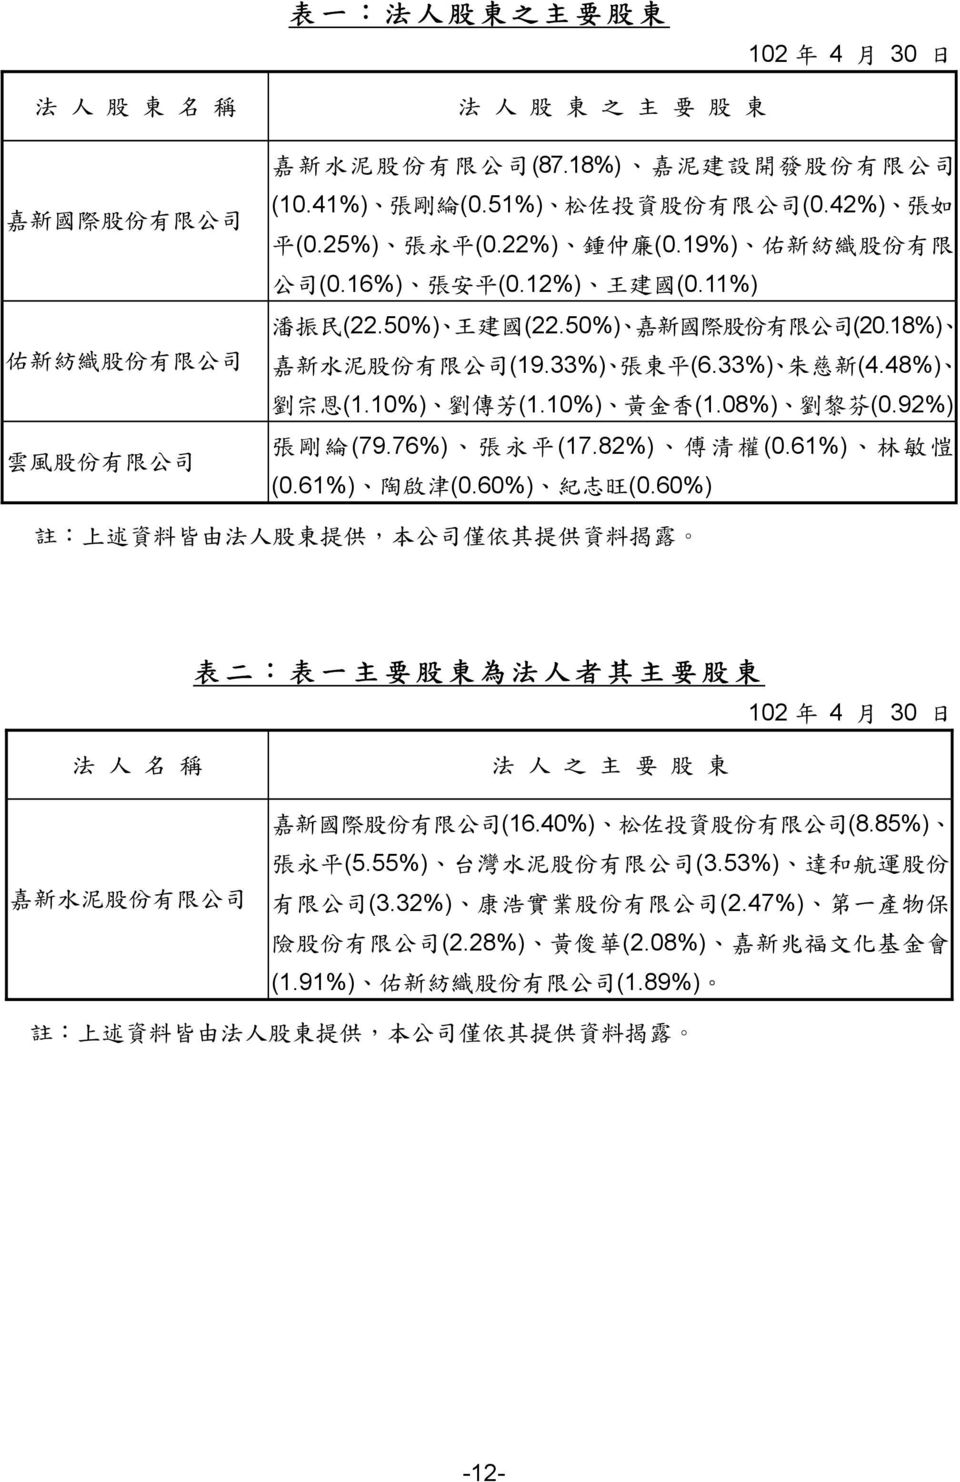 18%) 嘉 新 水 泥 股 份 有 限 公 司 (19.33%) 張 東 平 (6.33%) 朱 慈 新 (4.48%) 劉 宗 恩 (1.10%) 劉 傳 芳 (1.10%) 黃 金 香 (1.08%) 劉 黎 芬 (0.92%) 張 剛 綸 (79.76%) 張 永 平 (17.82%) 傅 清 權 (0.61%) 林 敏 愷 (0.61%) 陶 啟 津 (0.60%) 紀 志 旺 (0.